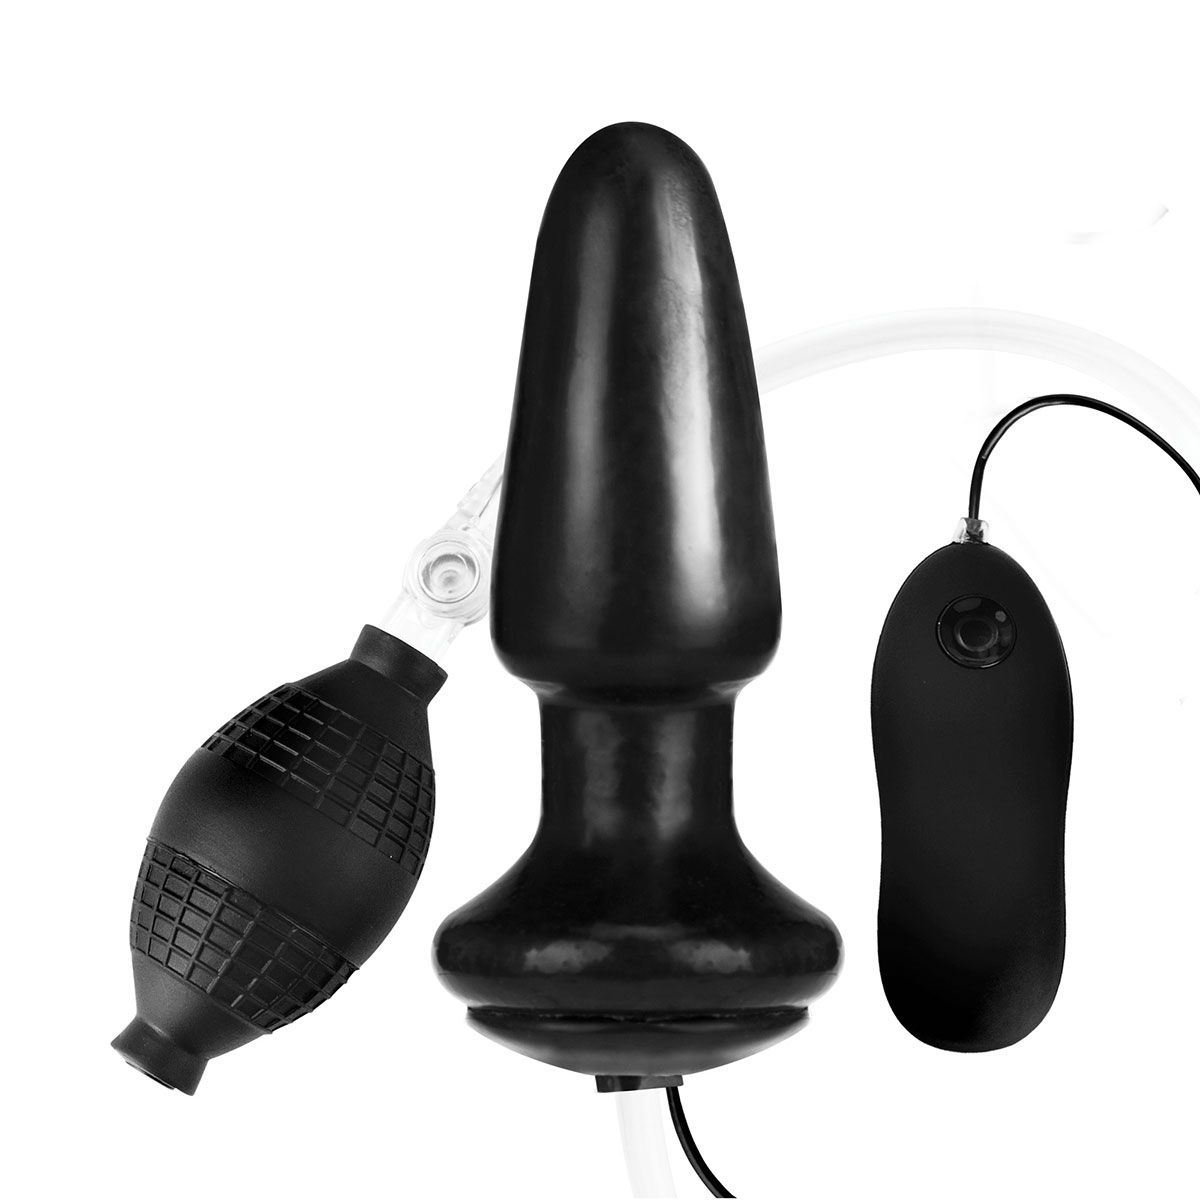 Добавьте новую игрушку для удовольствий с уникальной разработкой Lux Fetish Inflatable Vibrating Butt Plug - это продукт для взрослых, сопровождаемый боковым контроллером, который управляет различной степенью вибрации. Игрушка может изменять размер в зависимости от наддува, предоставляя пользователям максимальную власть над своим удовольствием.  Ширина основания - 5,57 см.